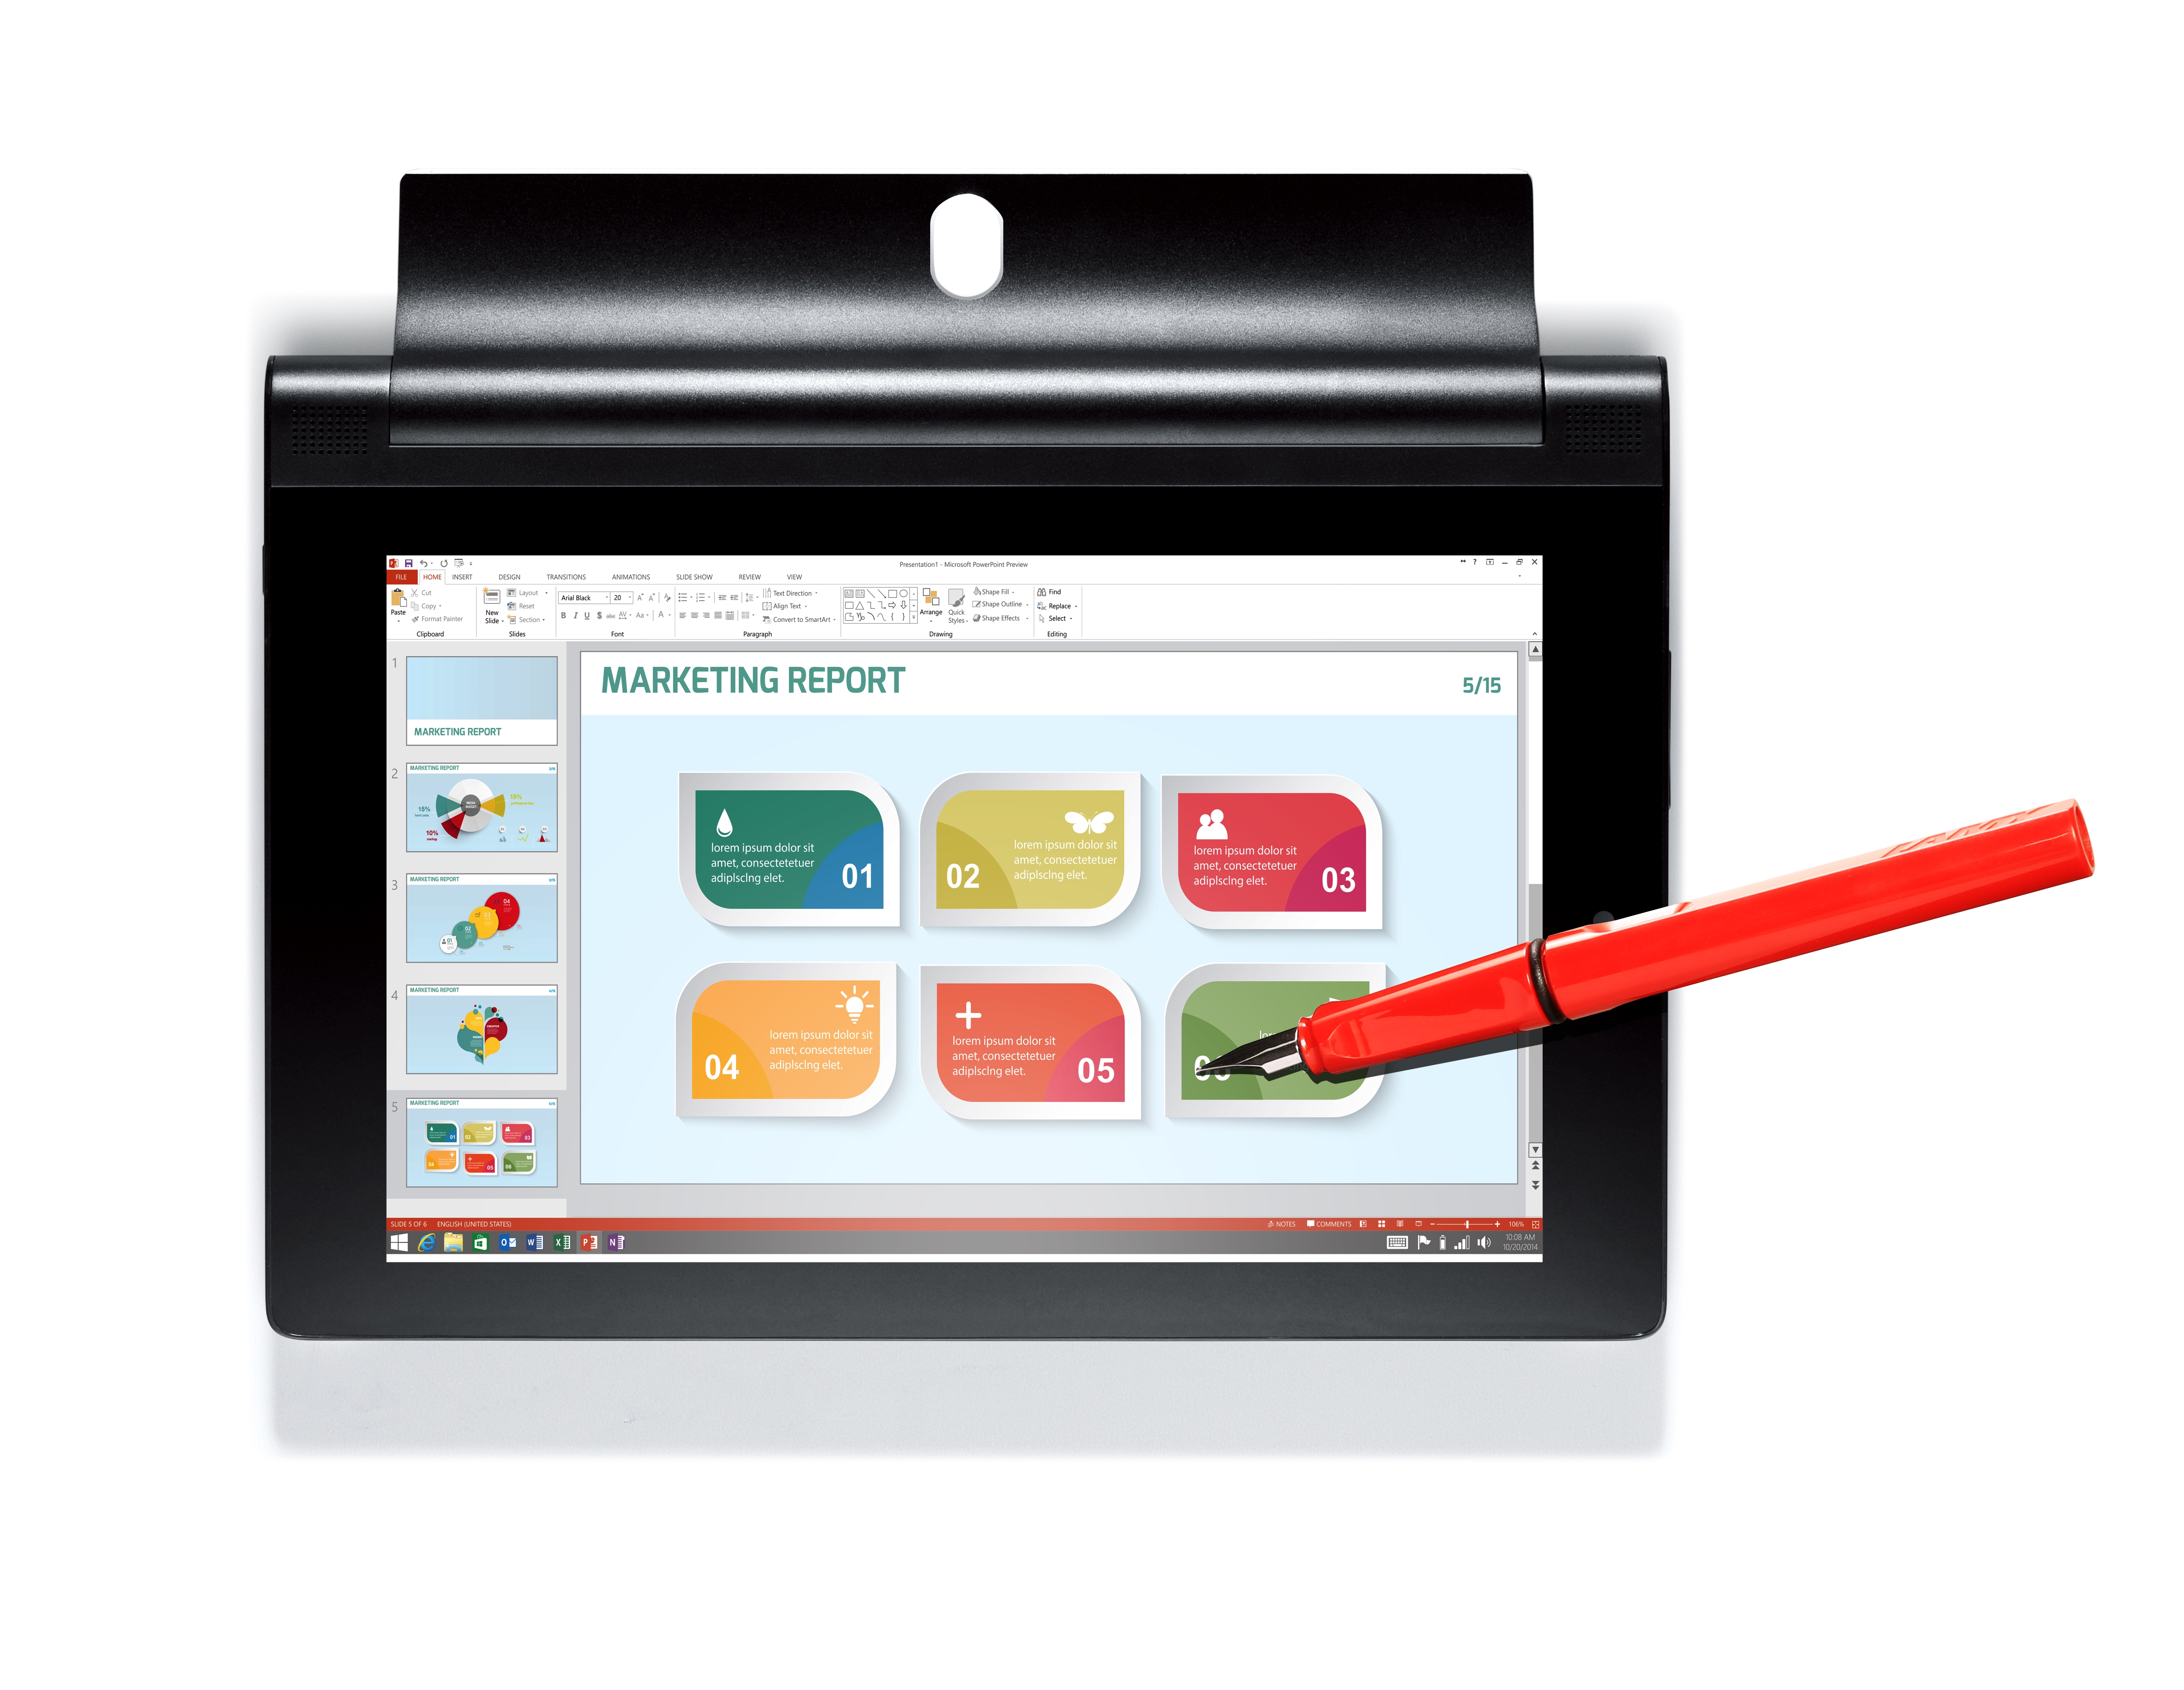 yoga tablet 2 anypen con windows permite escribir sobre la pantalla cualquier objeto metalico 03